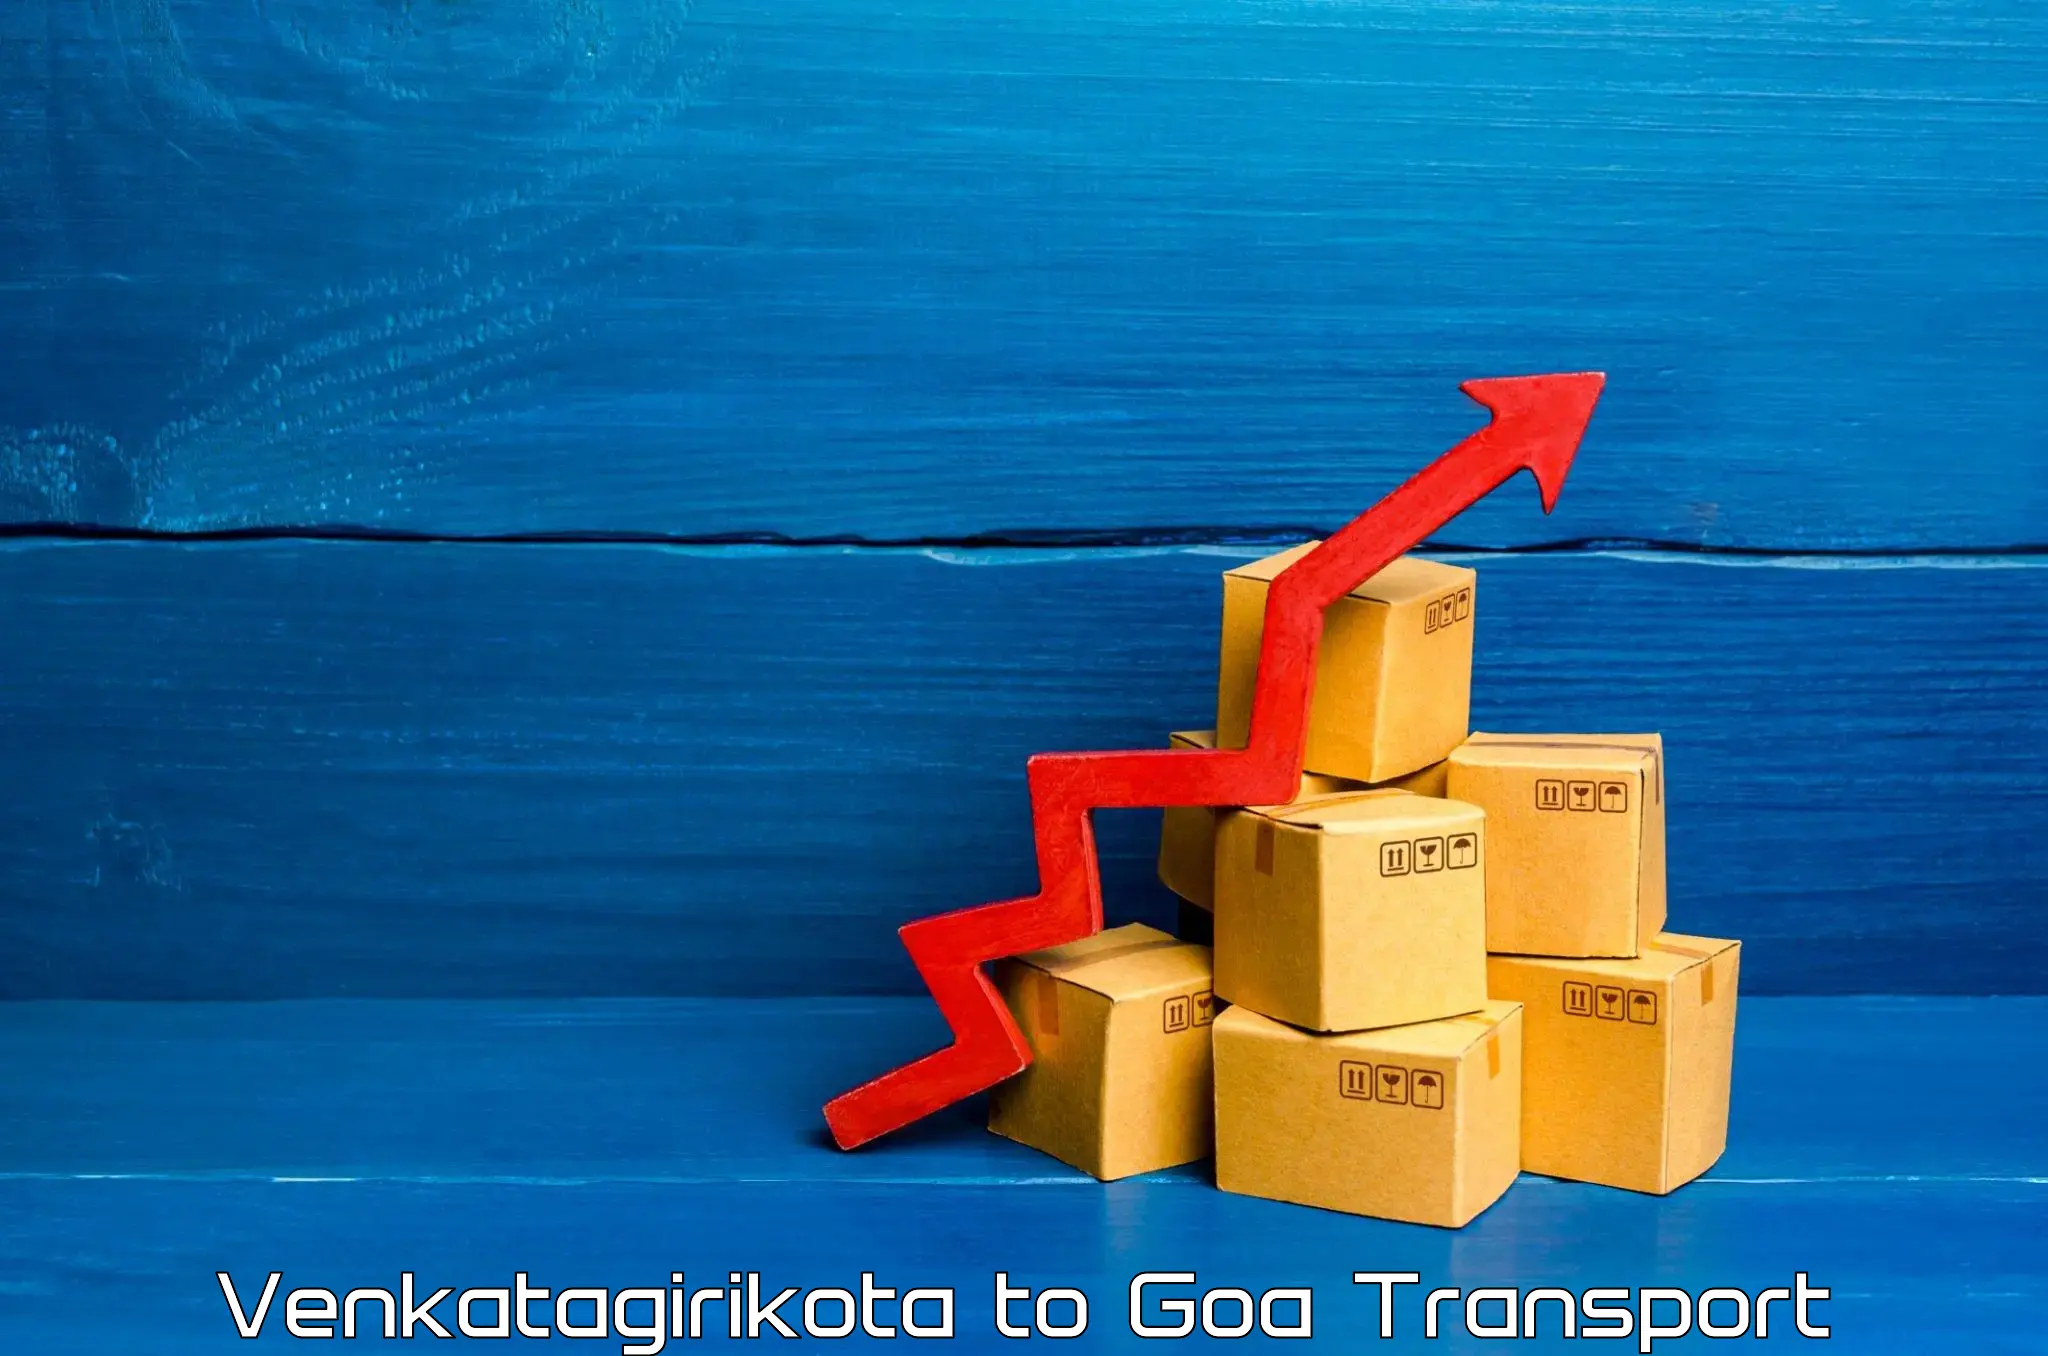 Interstate transport services Venkatagirikota to Goa